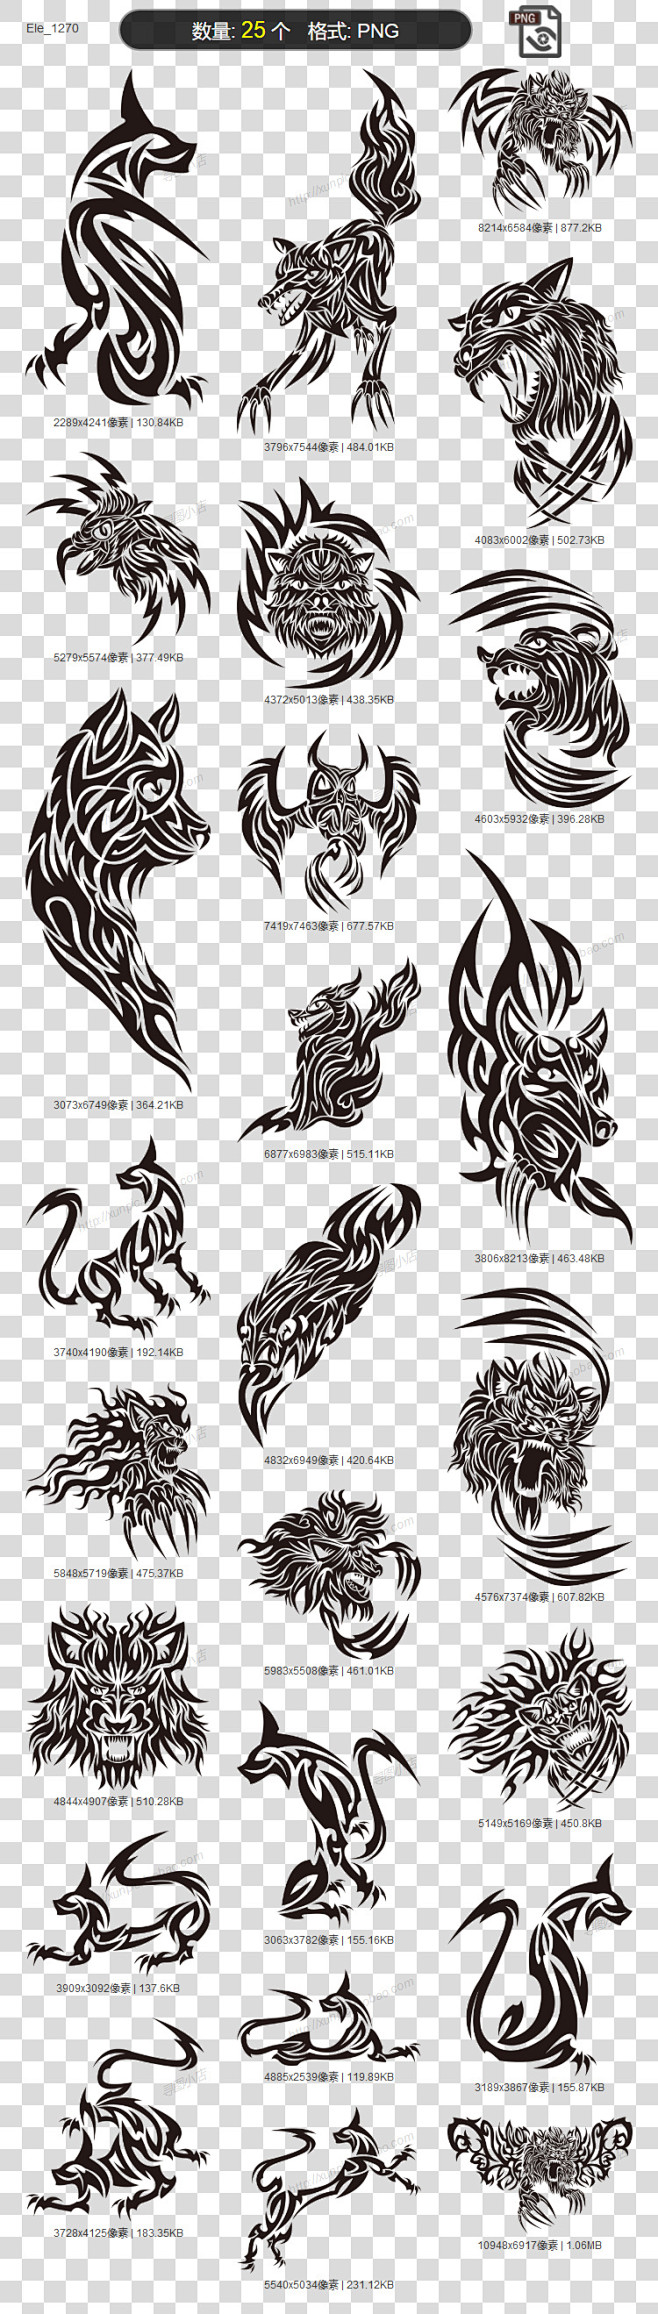 纹身图案素材老虎动物素材狮子纹身